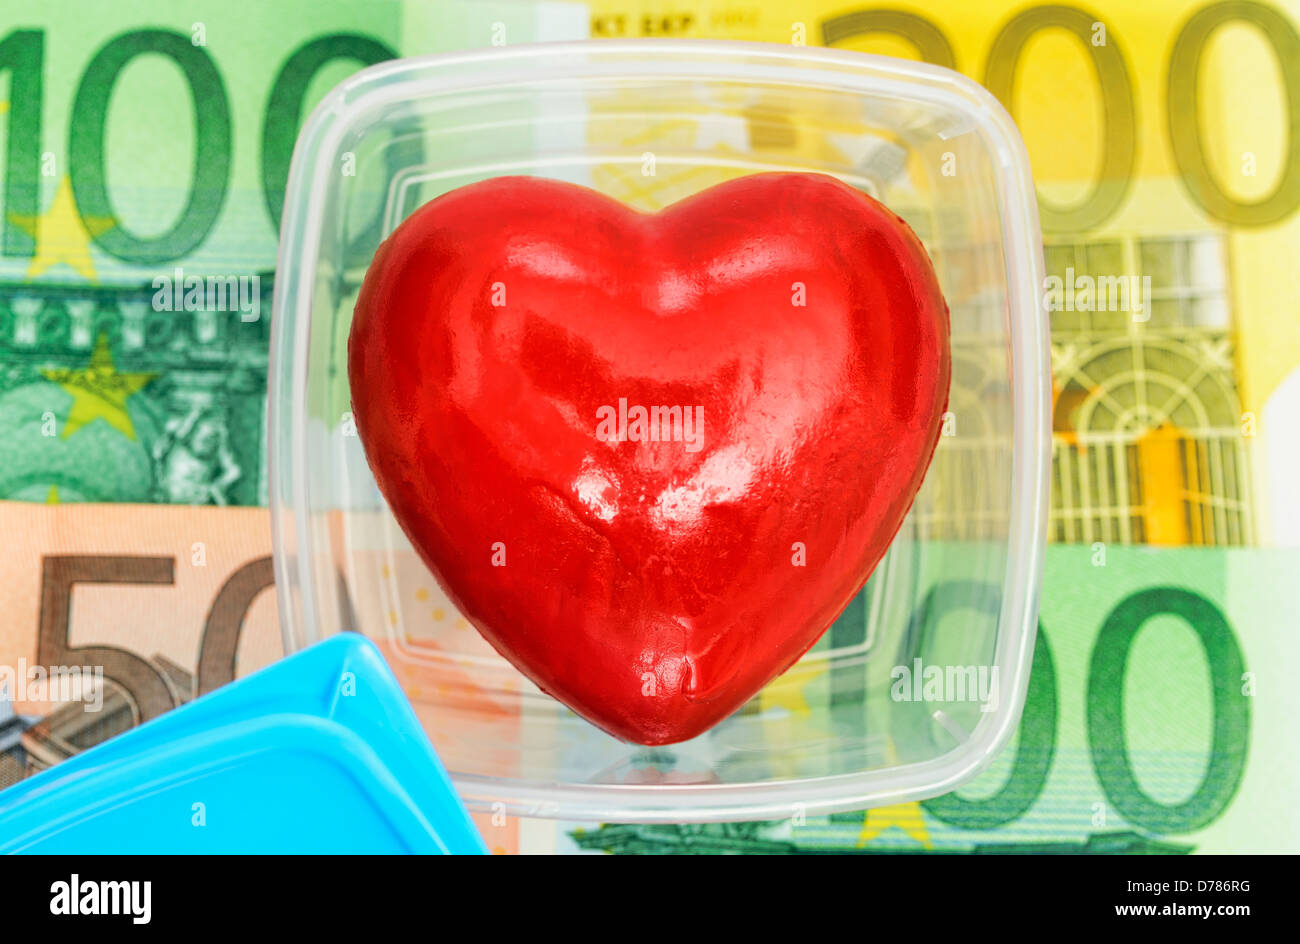 Corazón mantenga fresca en caja con billetes de banco, fotografía simbólica del comercio de órganos Foto de stock